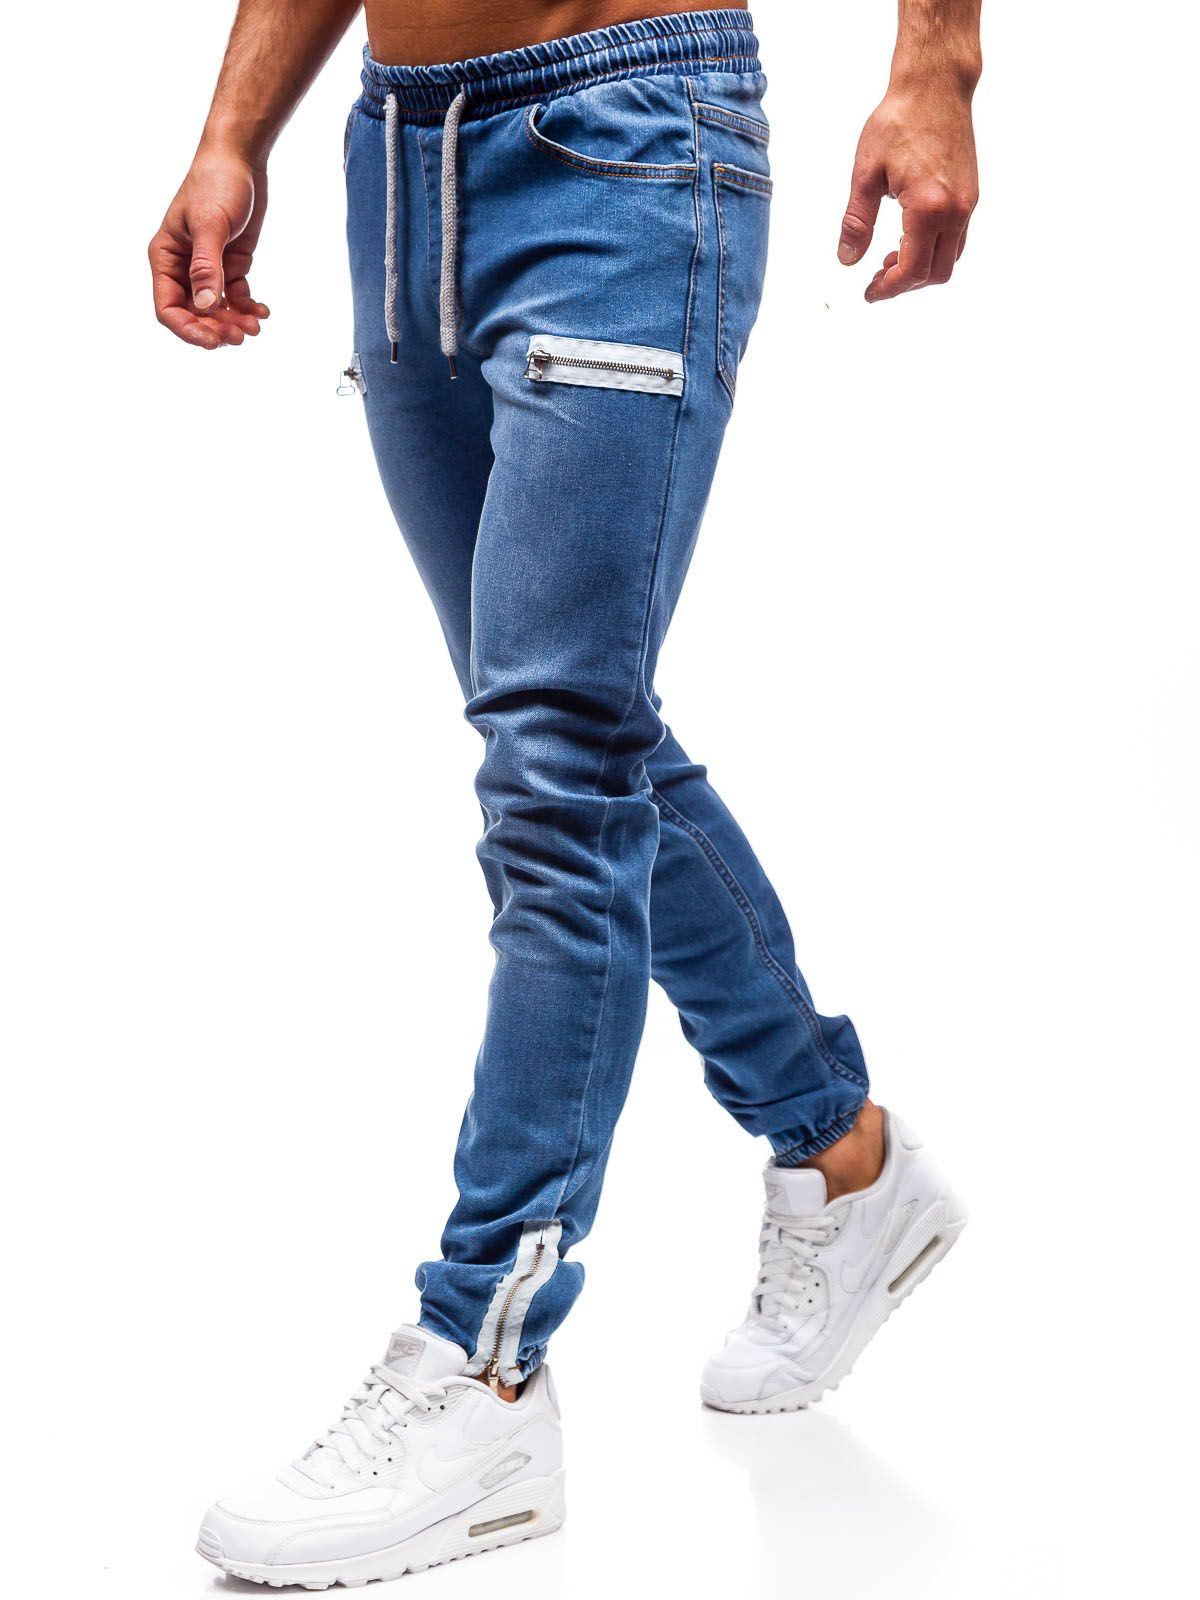 Мужские джинсы с молниями. Джинсы эластичные мужские. Спортивные джинсы мужские. Штаны джинсы мужские. Джинсовые брюки мужские.